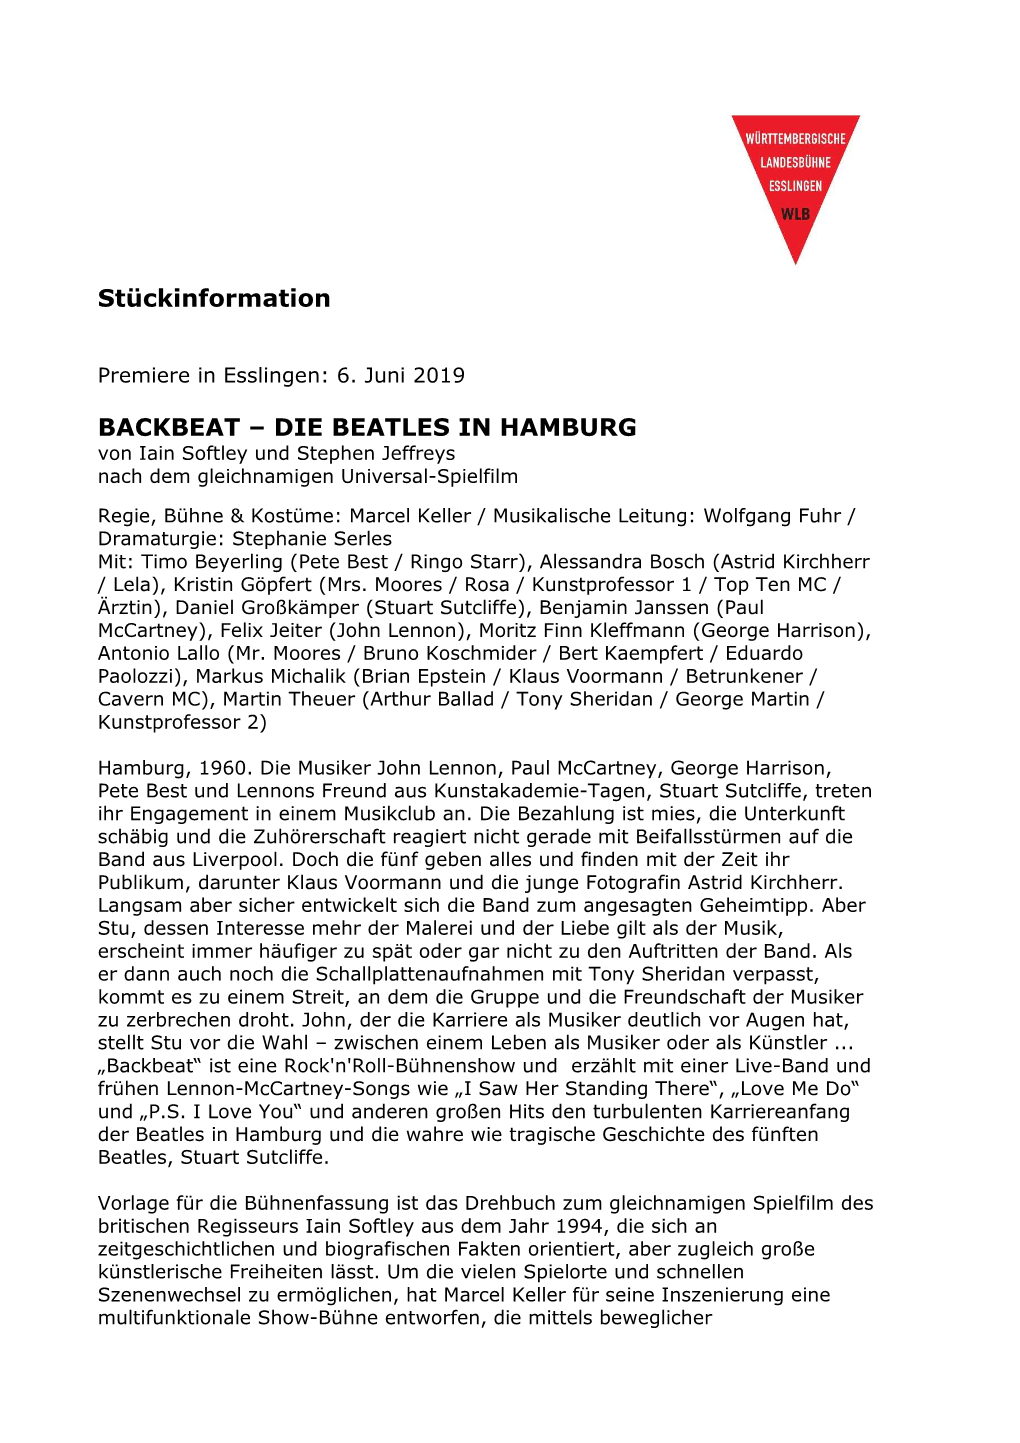 BACKBEAT – DIE BEATLES in HAMBURG Von Iain Softley Und Stephen Jeffreys Nach Dem Gleichnamigen Universal-Spielfilm